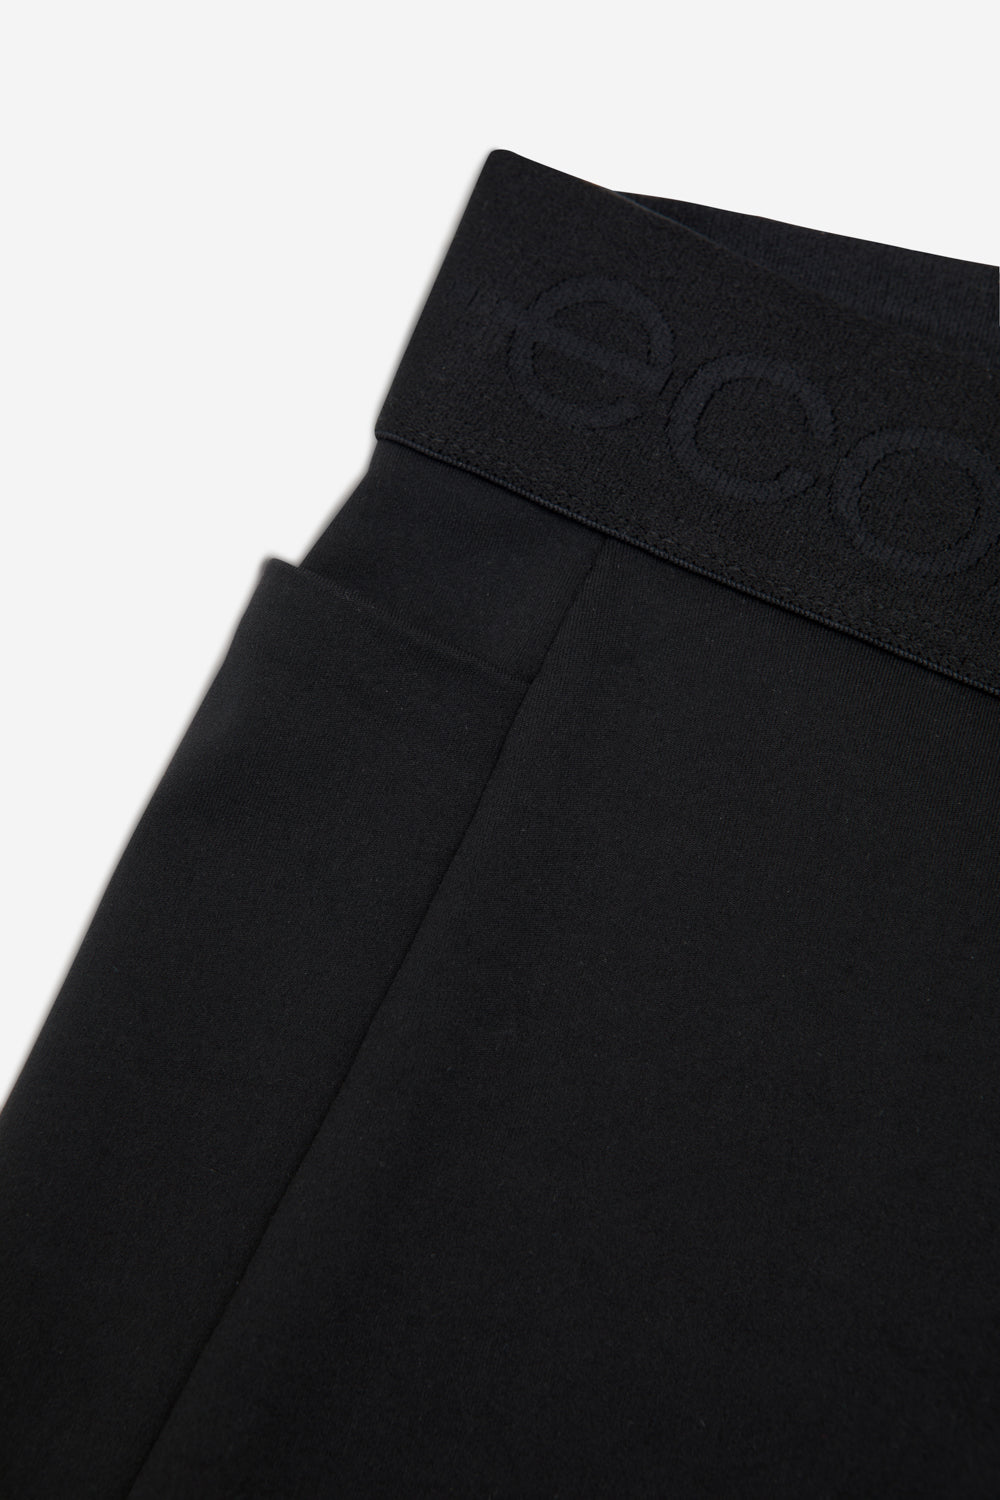 Lote de 2 leggings cortos negro + gris jaspeado La Redoute